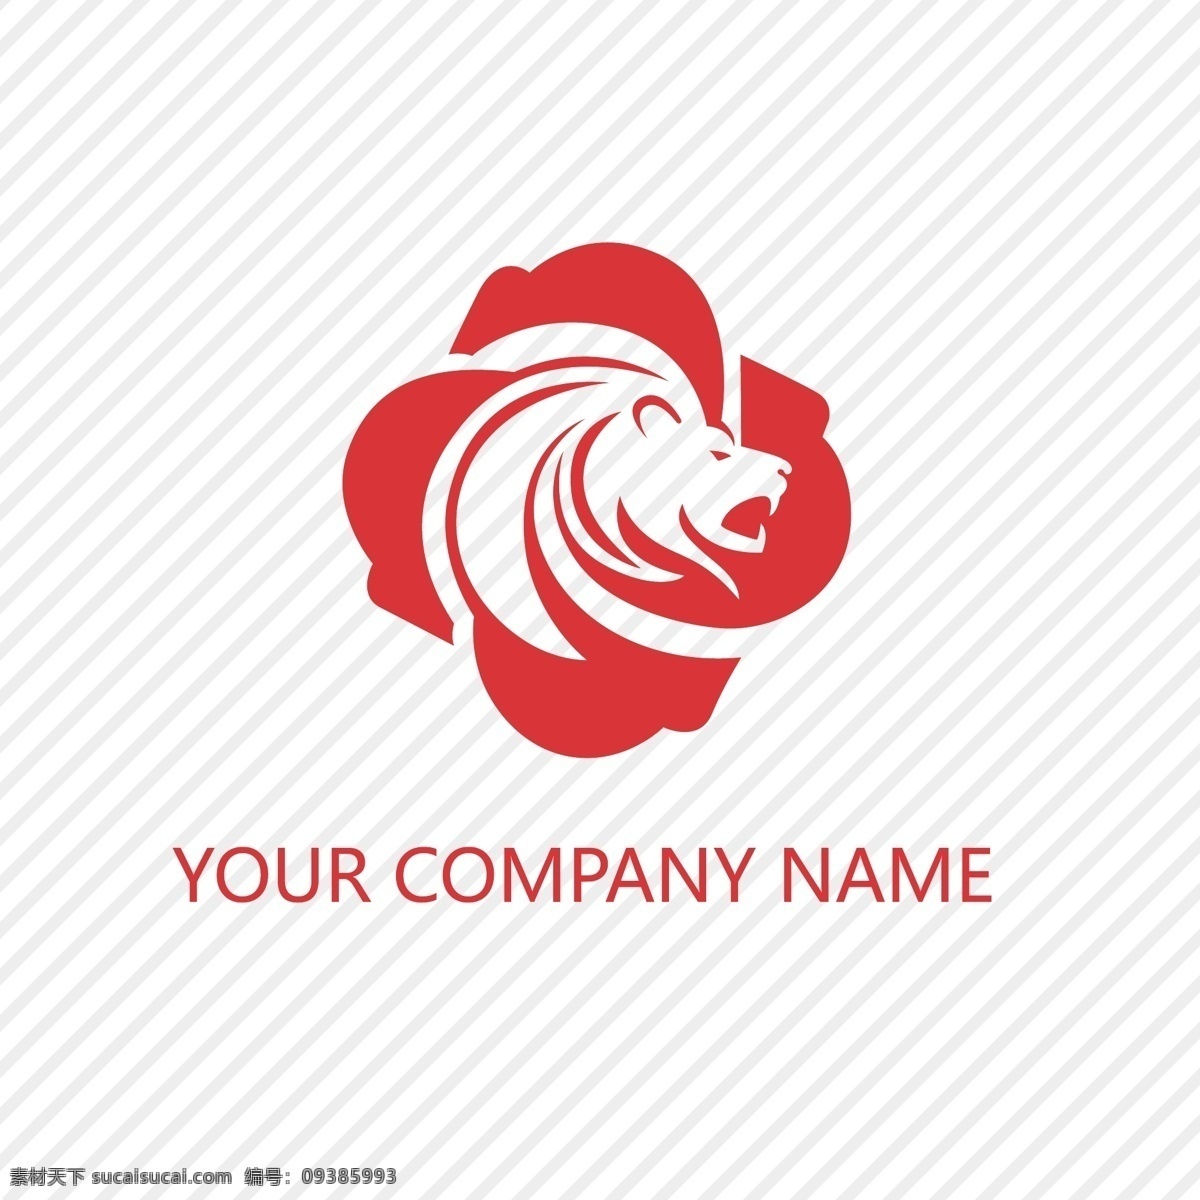 红色 矢量 老虎 标志 动物 颜色 虎 企业 公司 品牌 抽象图案 形状 现代企业形象